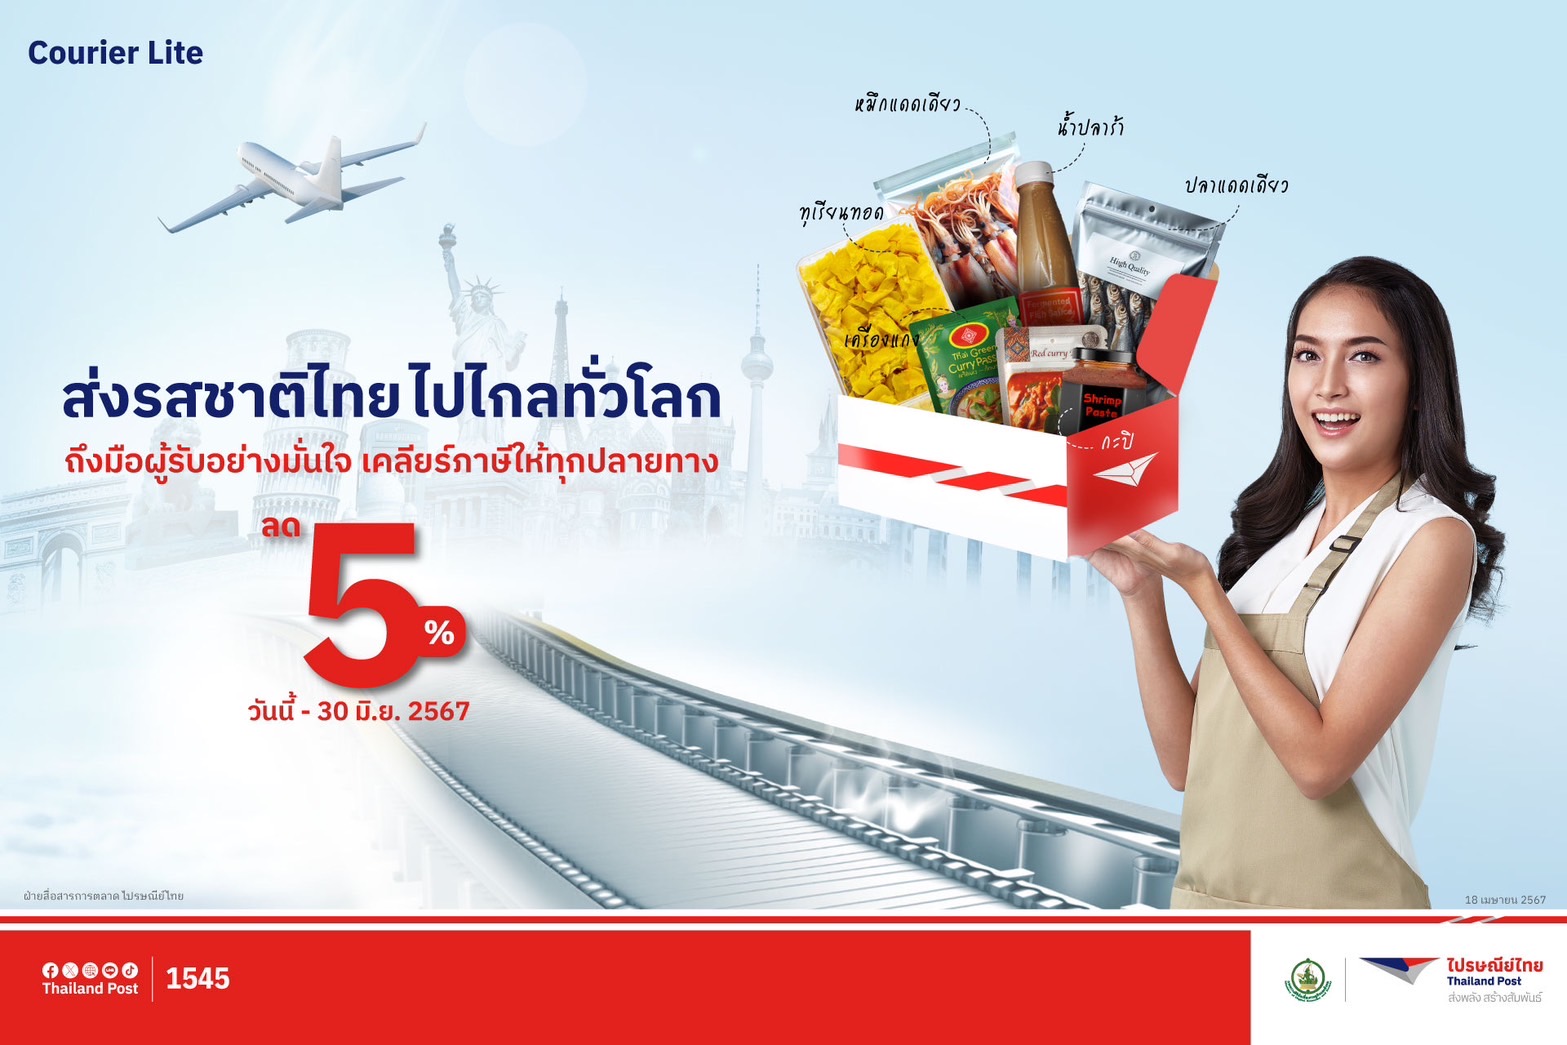 ไปรษณีย์ไทย ต่อโปรฯ ส่งต่างประเทศ 'Courier Lite' หนุนรสชาติและความอร่อยแบบไทย ไกลทั่วโลก จนถึง 30 มิ.ย. นี้